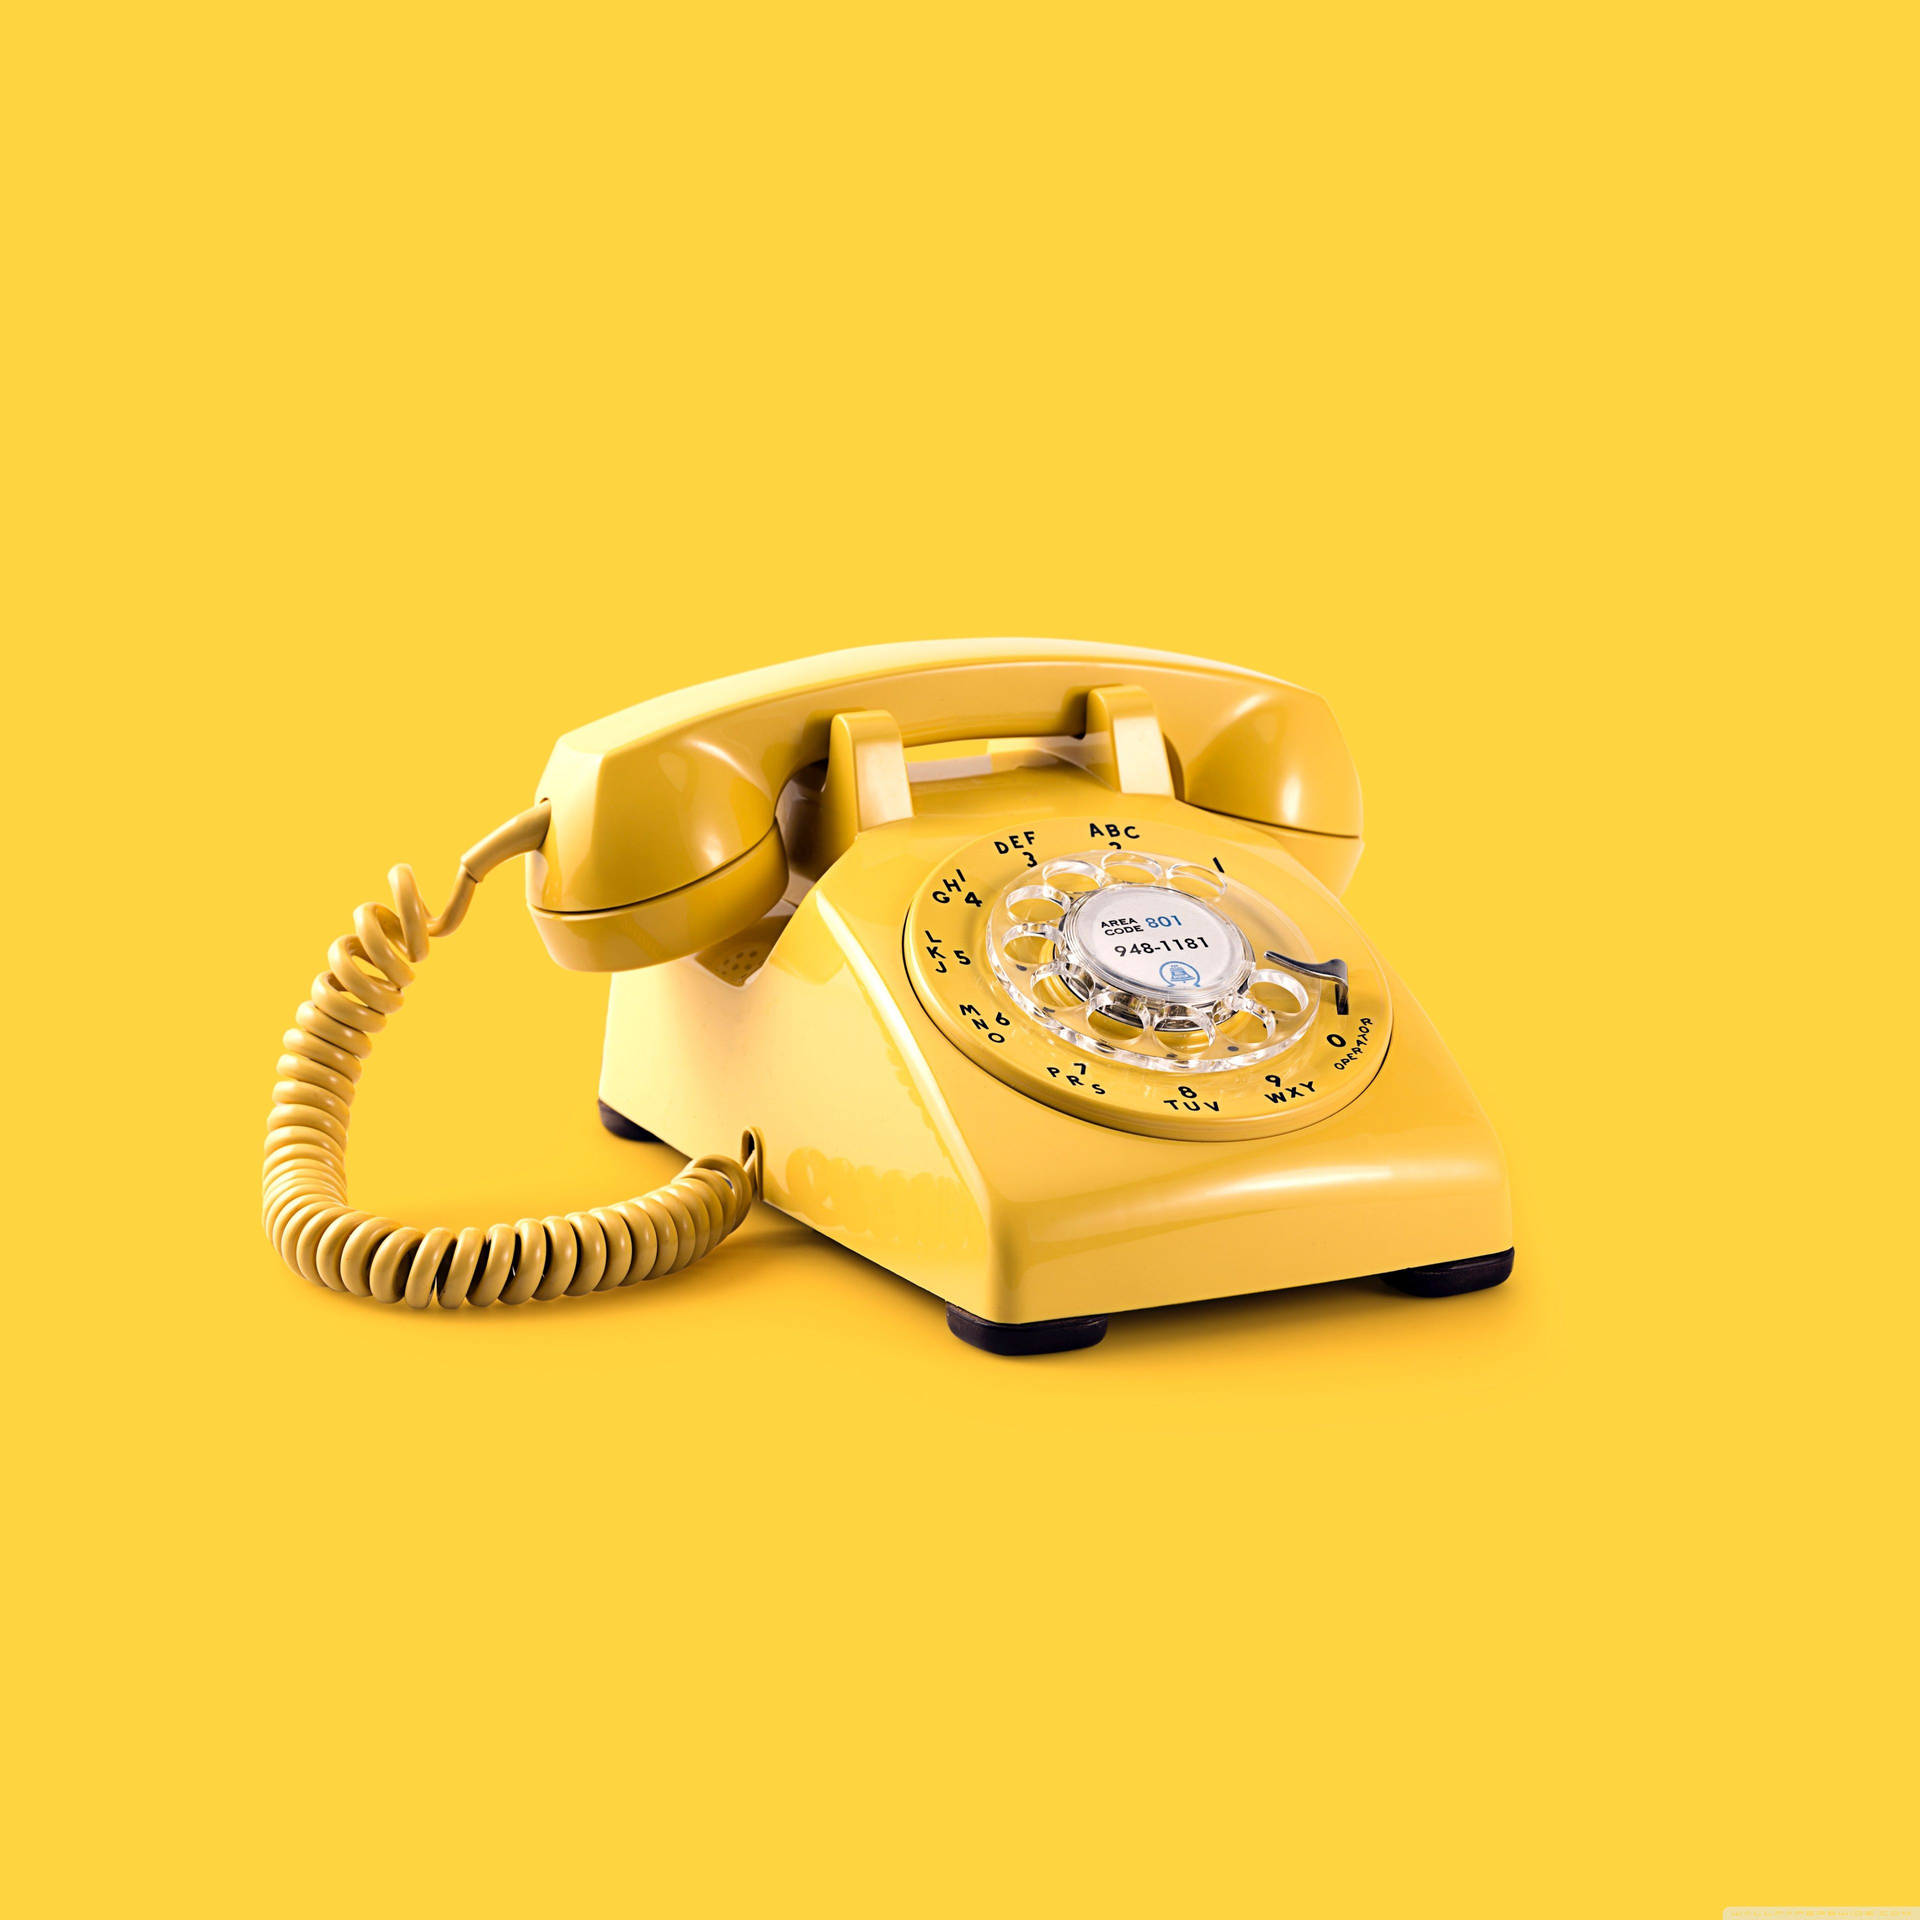 Aesthetic Retro Yellow Telephone Background